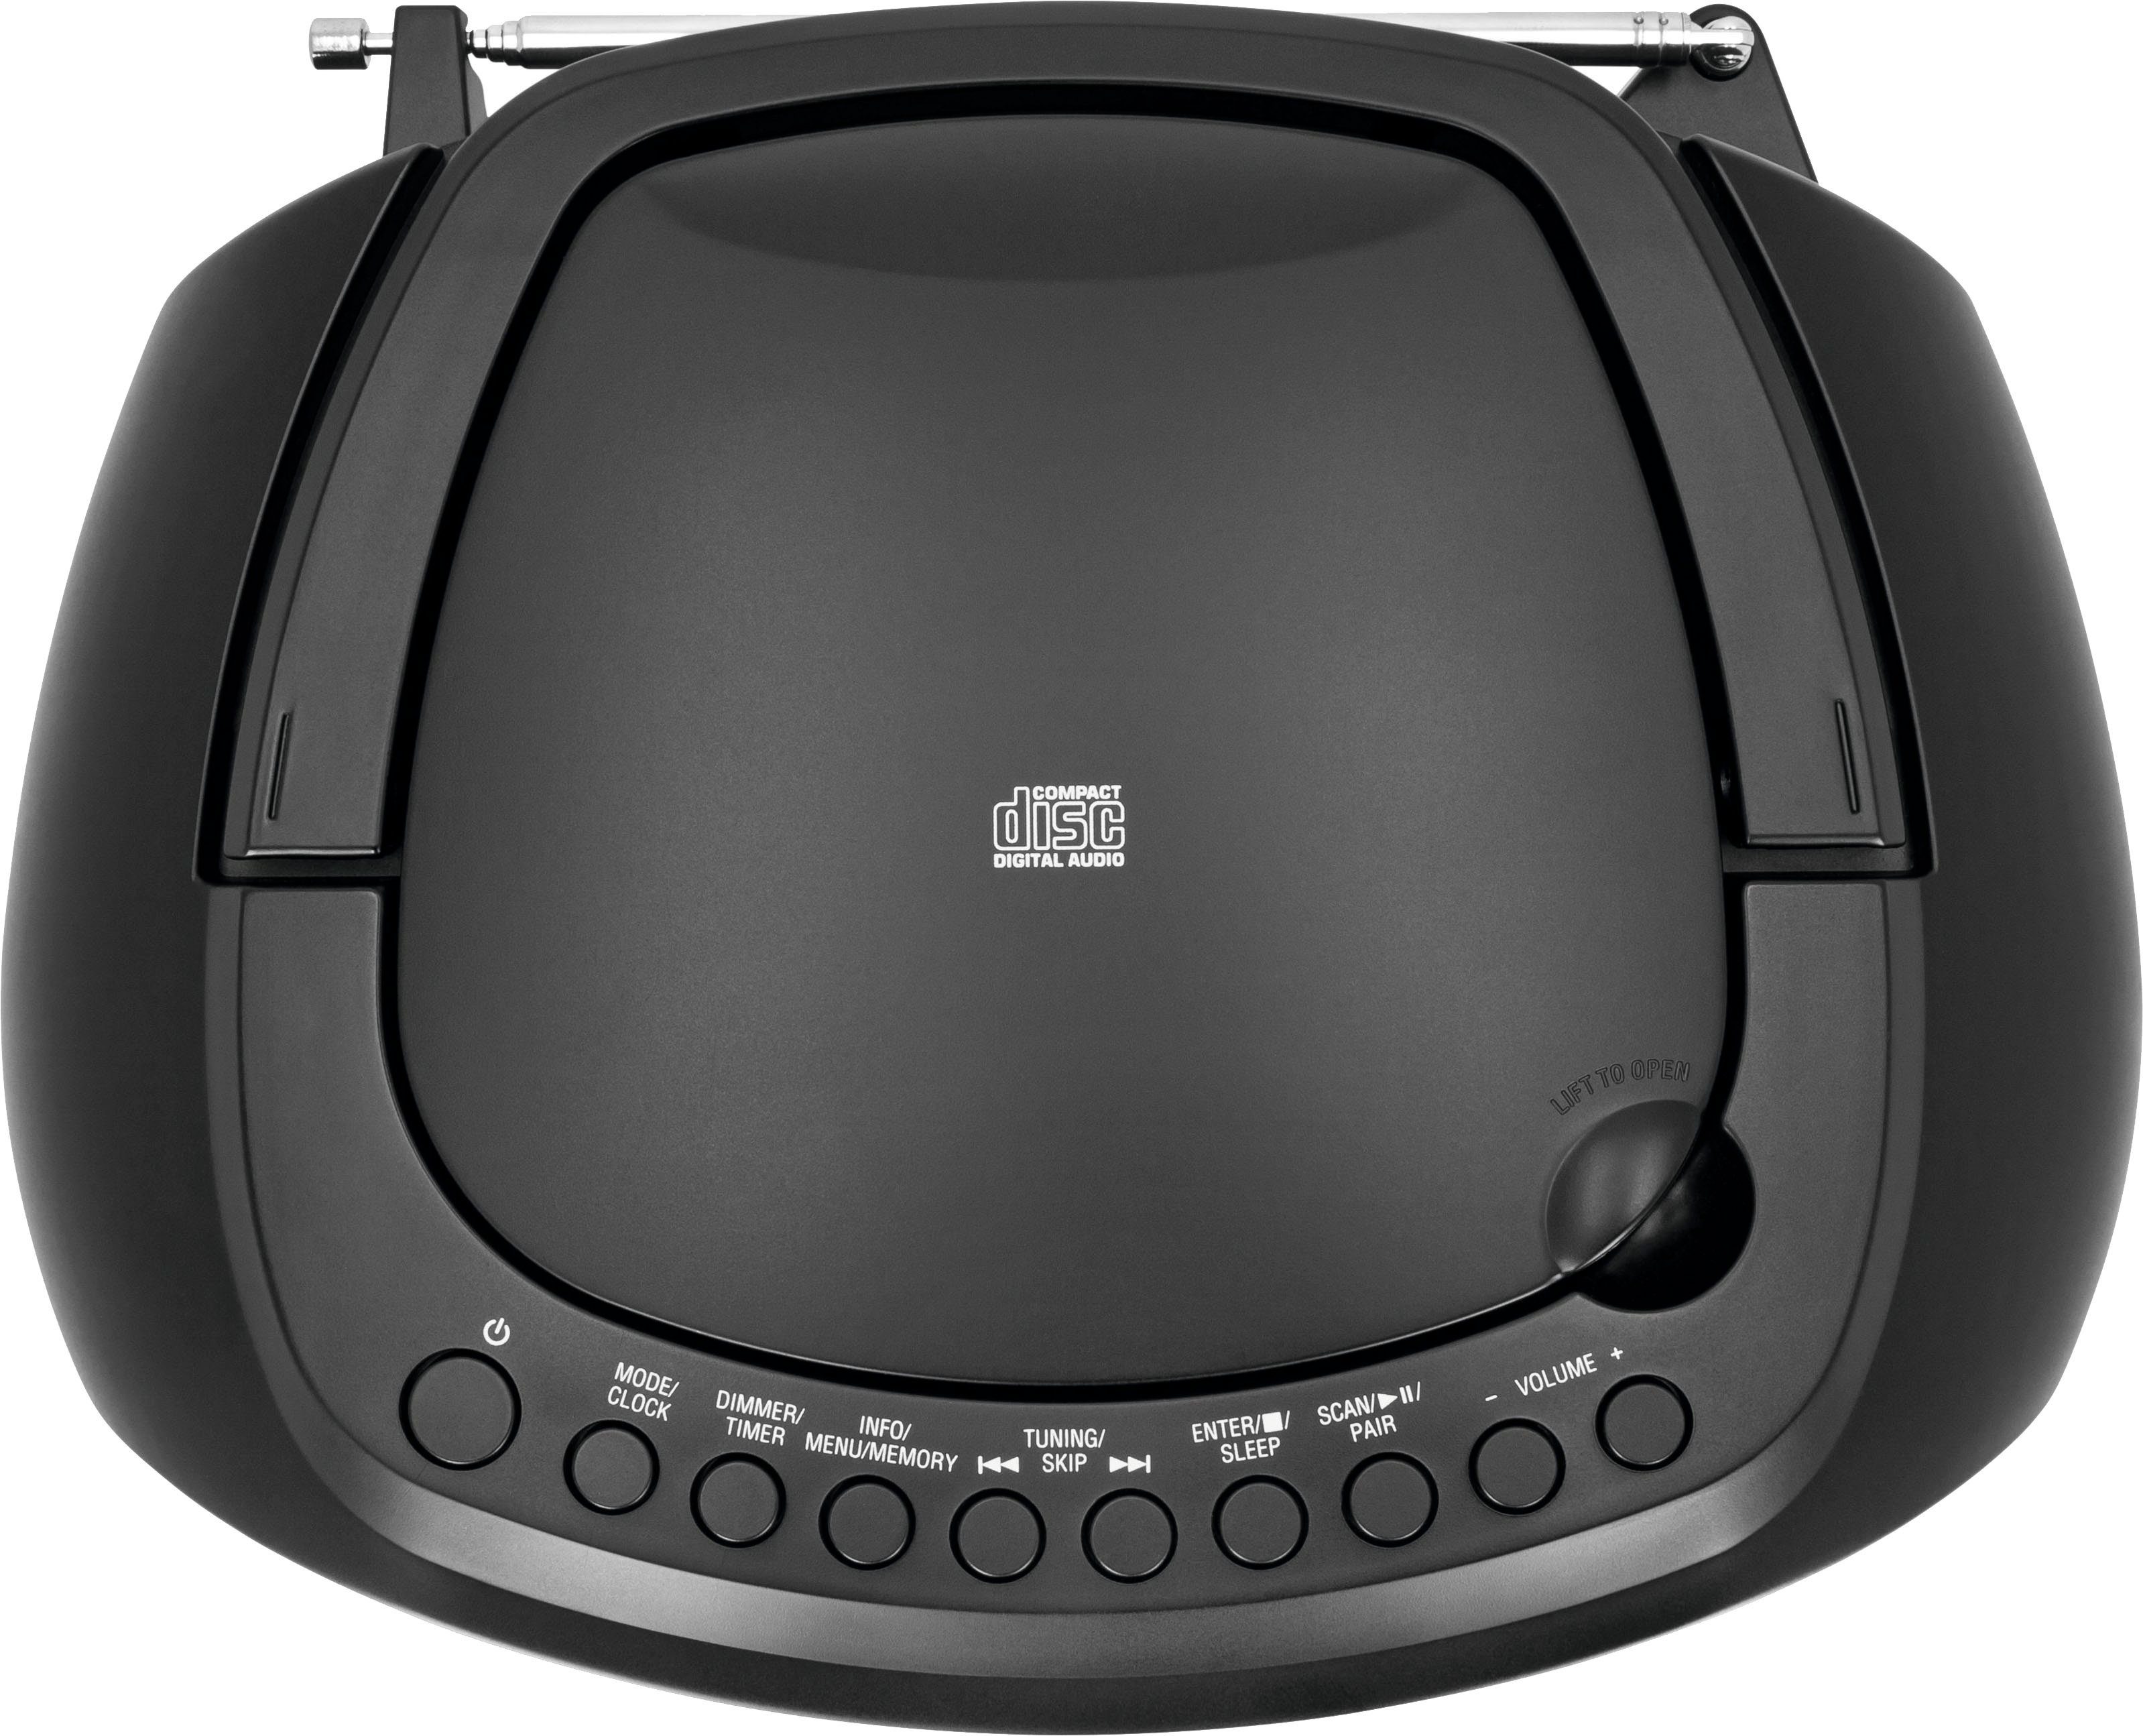 TechniSat Digitradio 1990 Stereo- CD-Player, FM-Tuner, Boombox Bluetooth, USB, DAB+, UKW, Batteriebetrieb schwarz (DAB), (Digitalradio mit möglich)